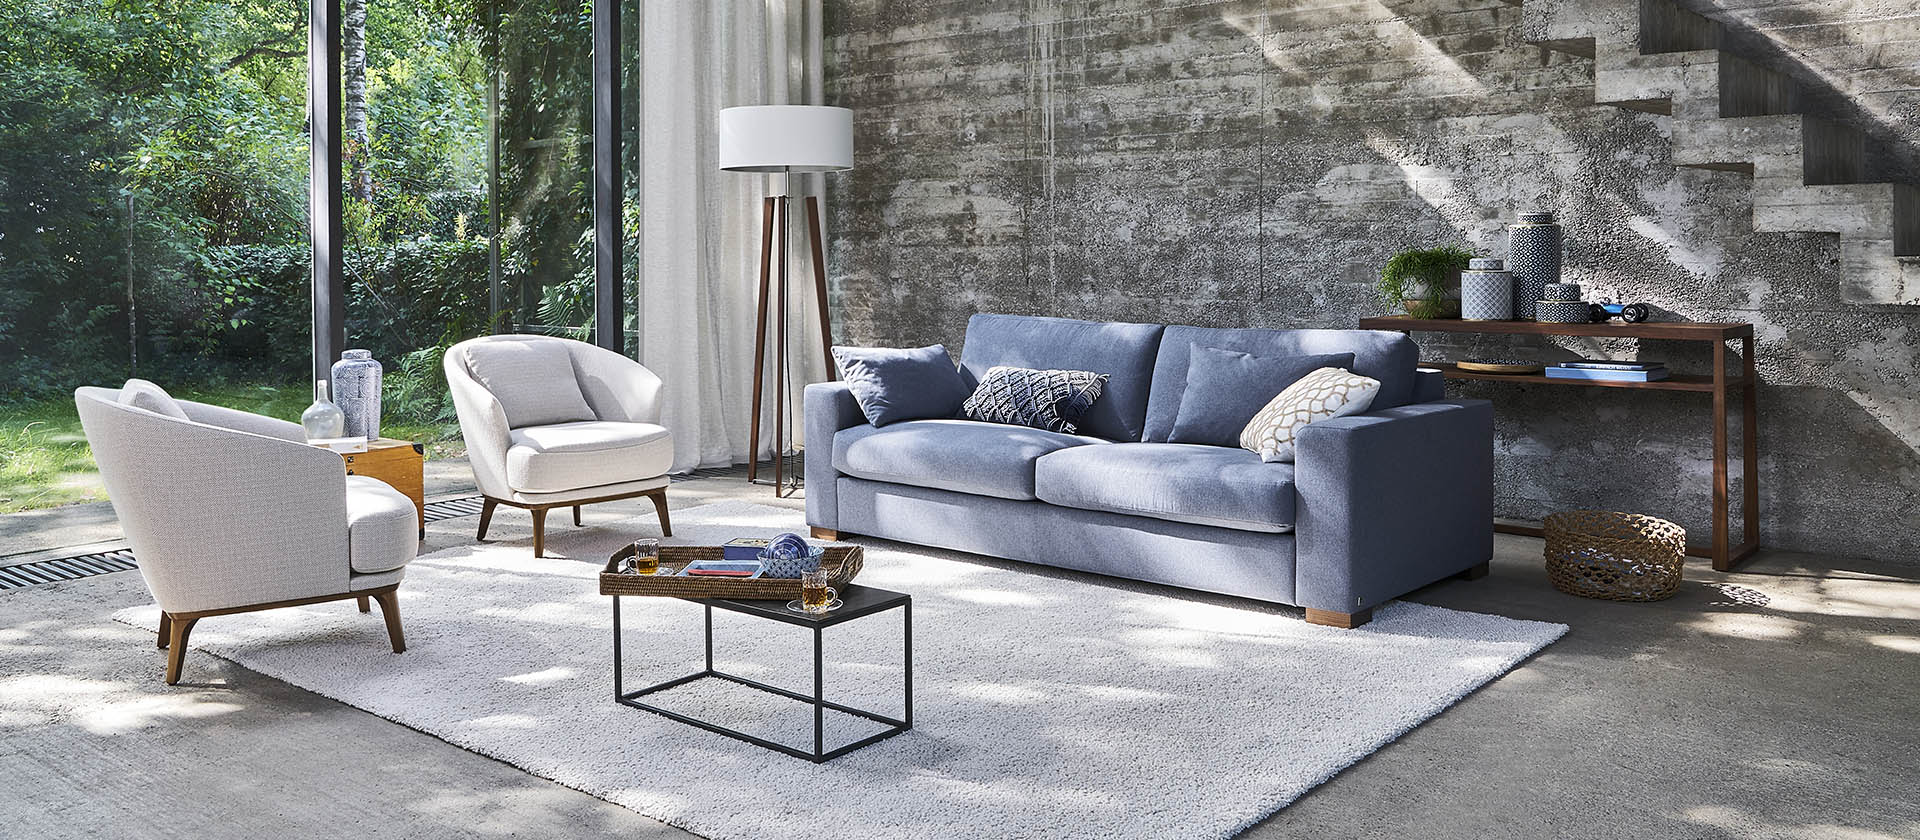 Bielefelder Werkstaetten Inspiration sofa